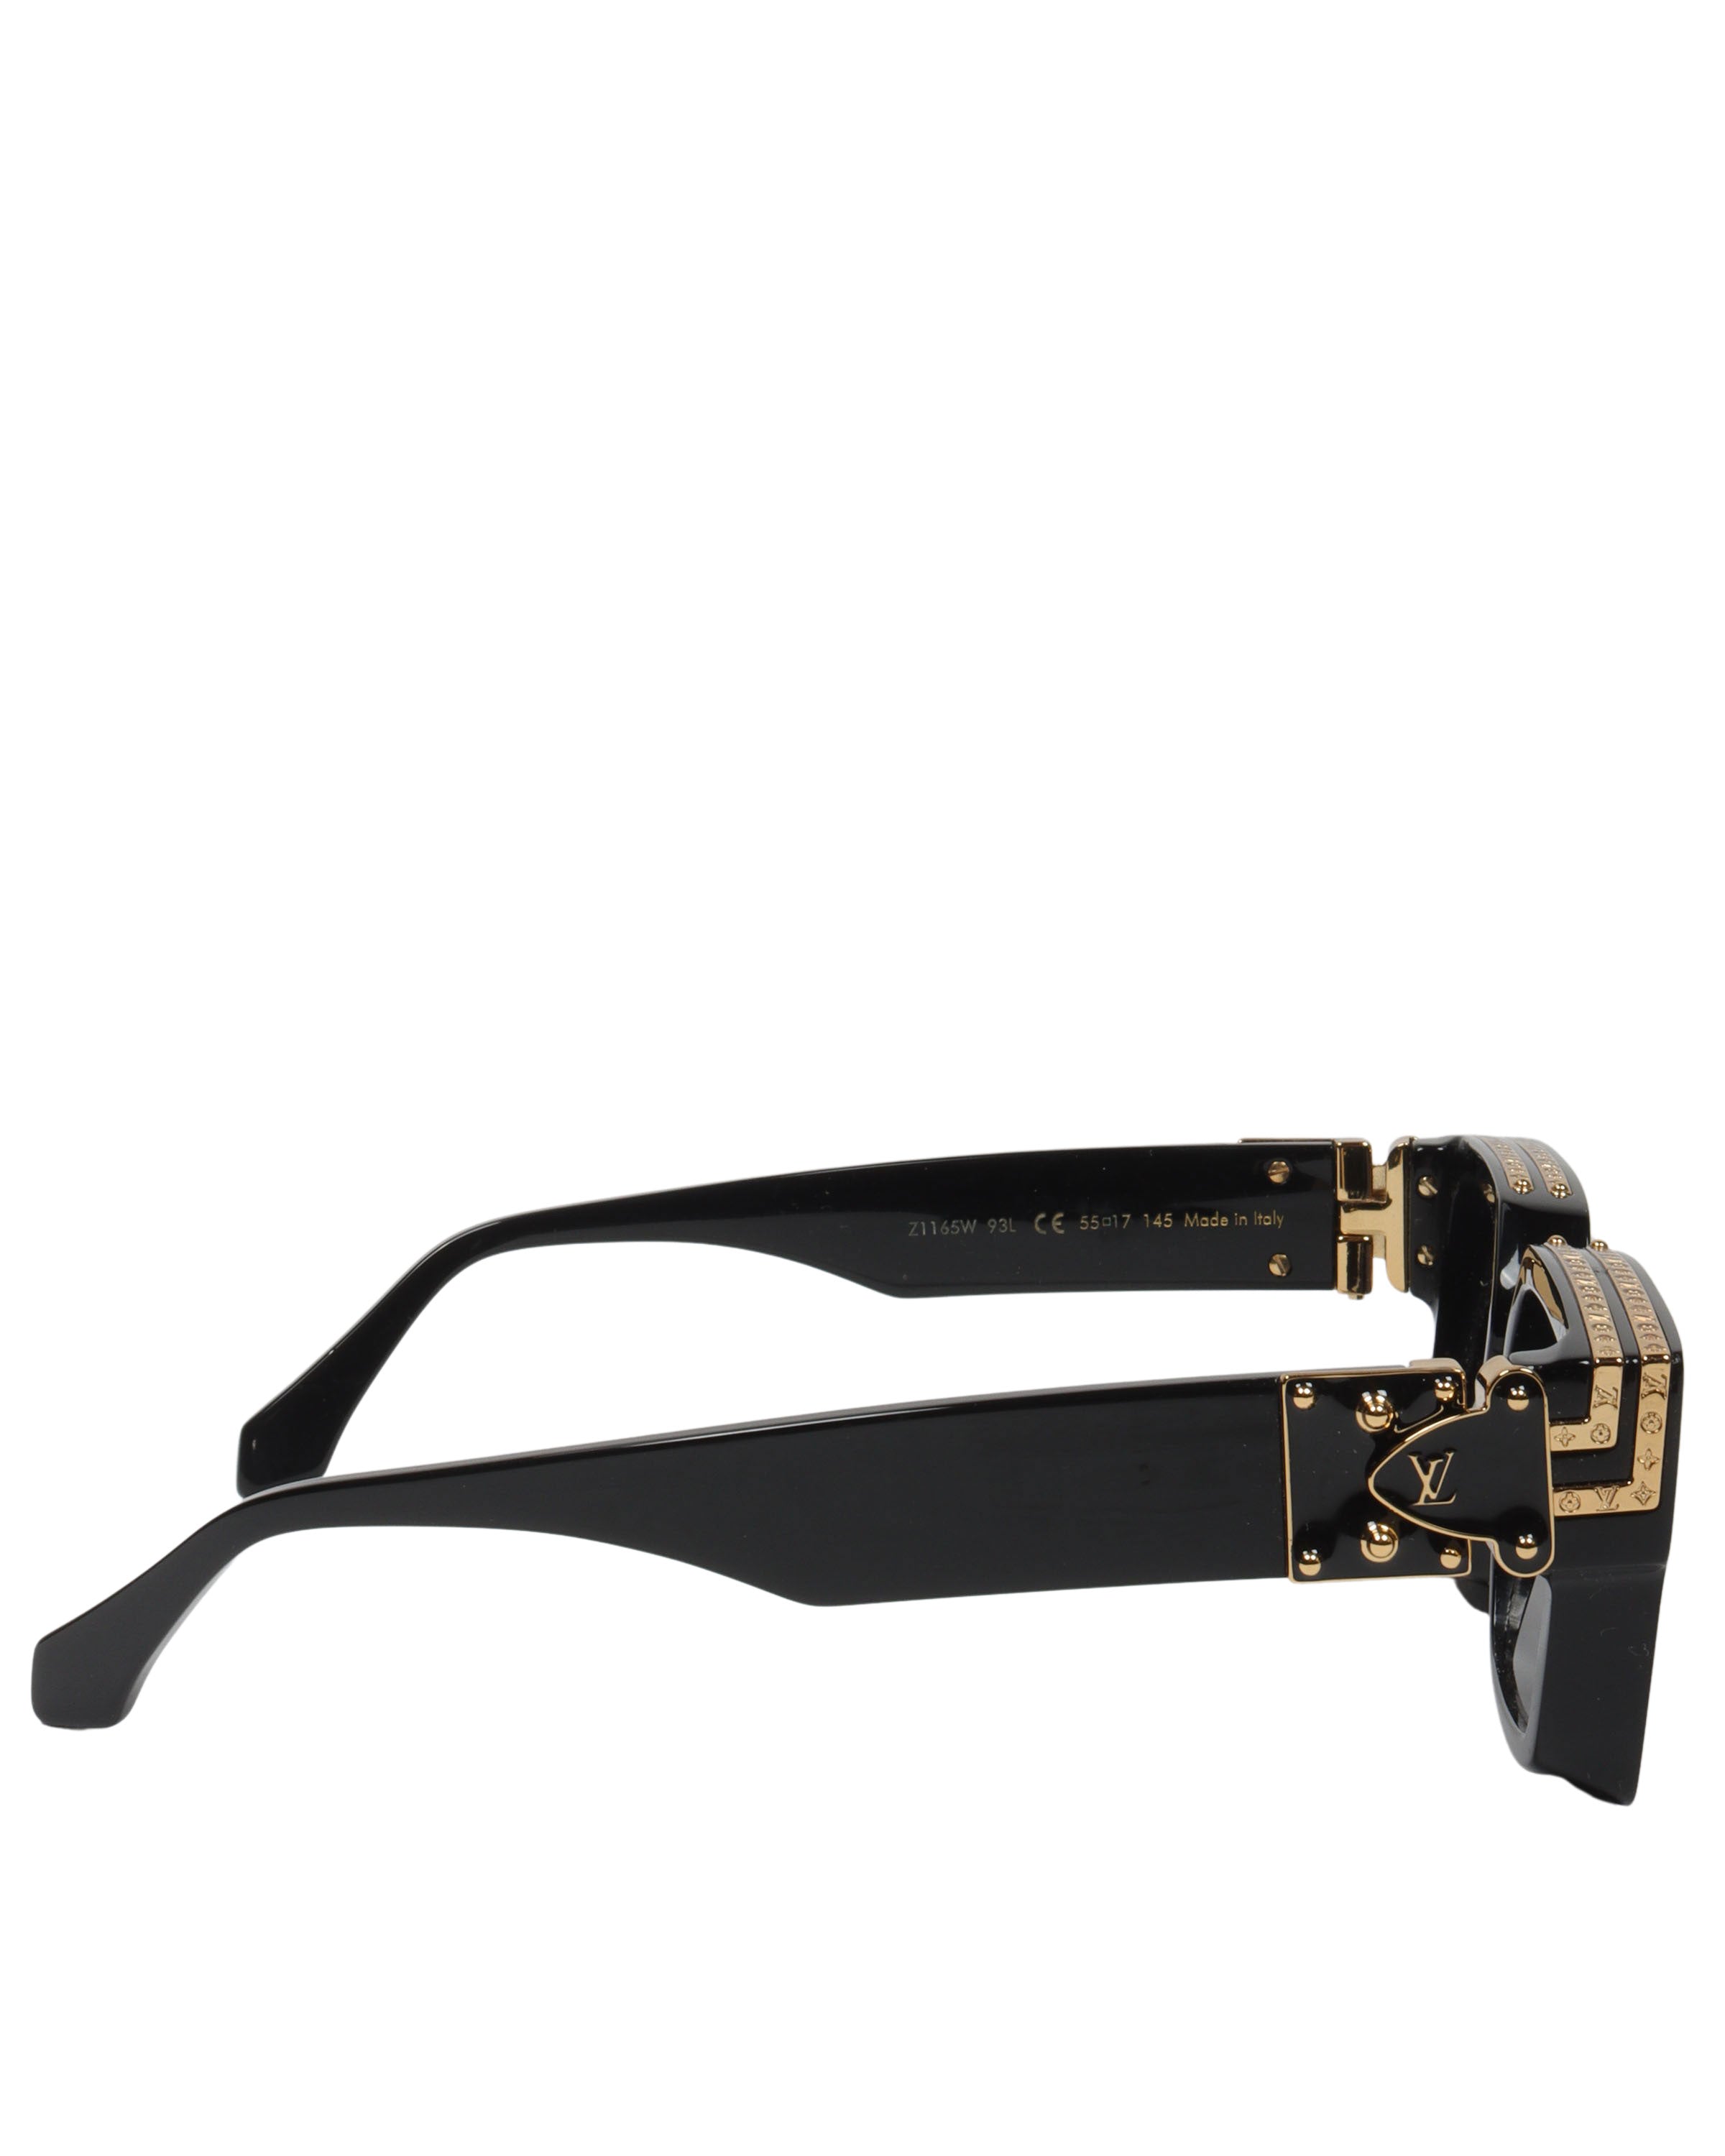 Louis Vuitton 1.1 Millionaires Sunglasses One Size Black Z1165W 93L